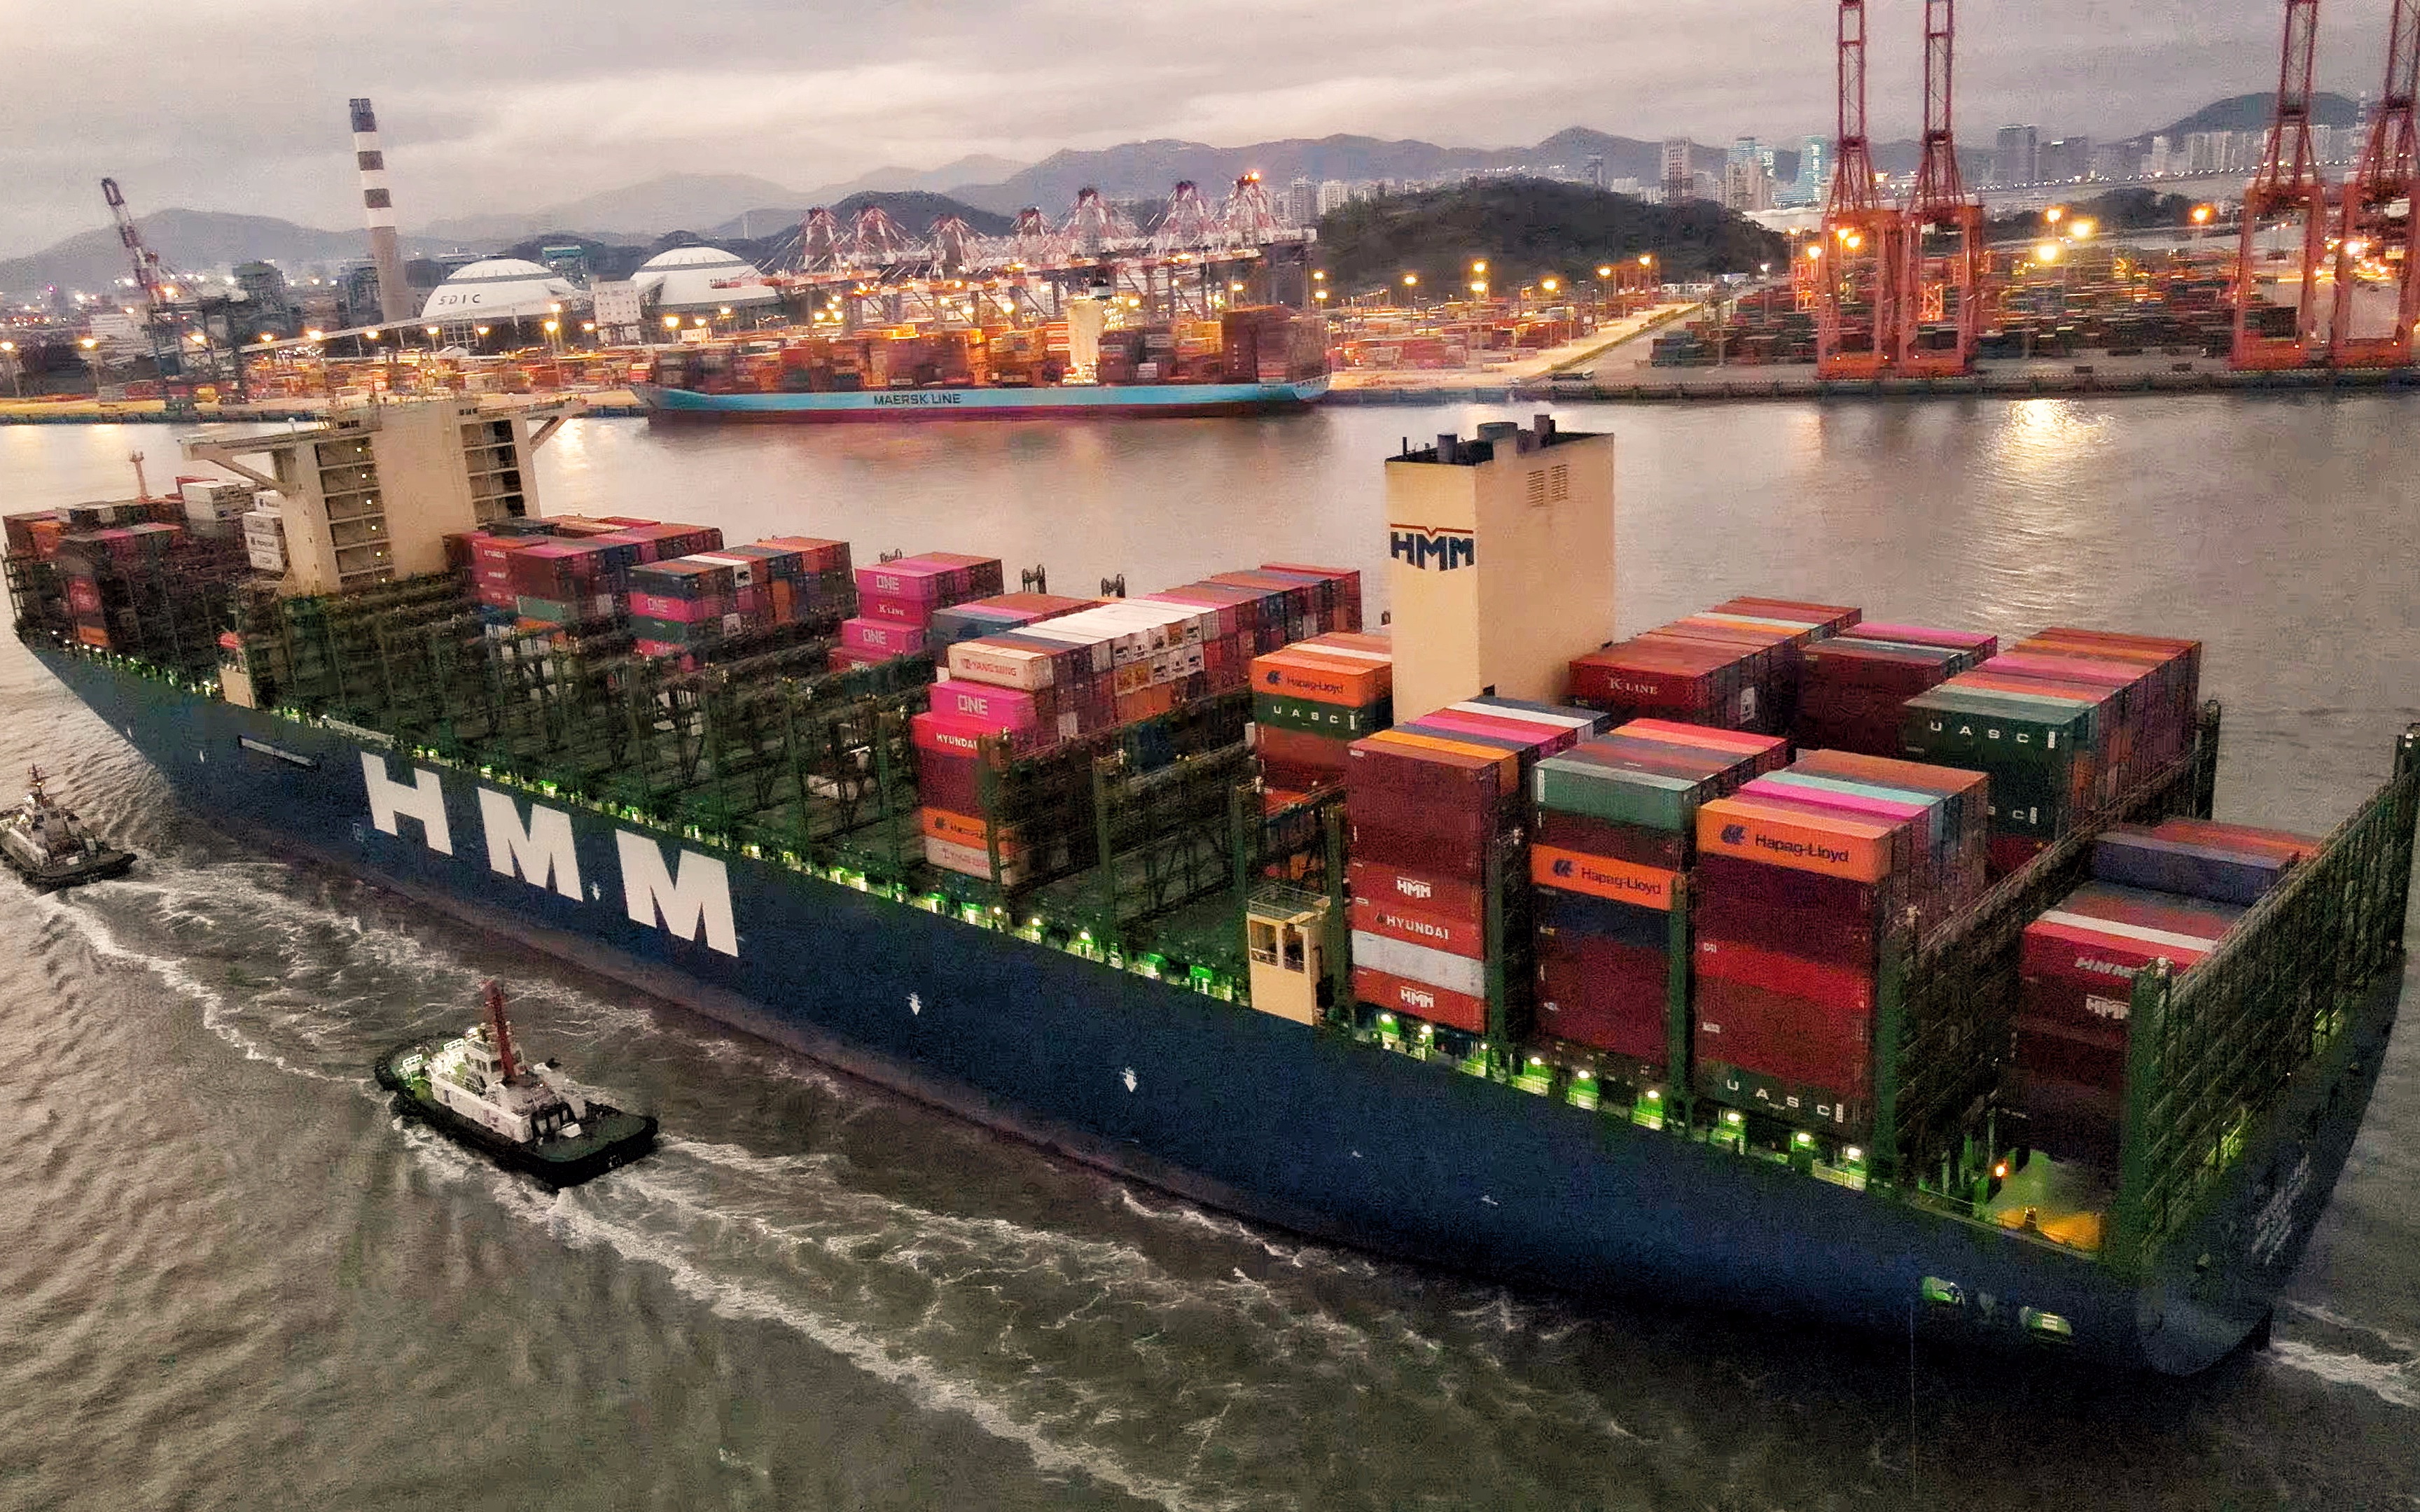 【航拍】全球最大货船:hmm——《启航厦门》